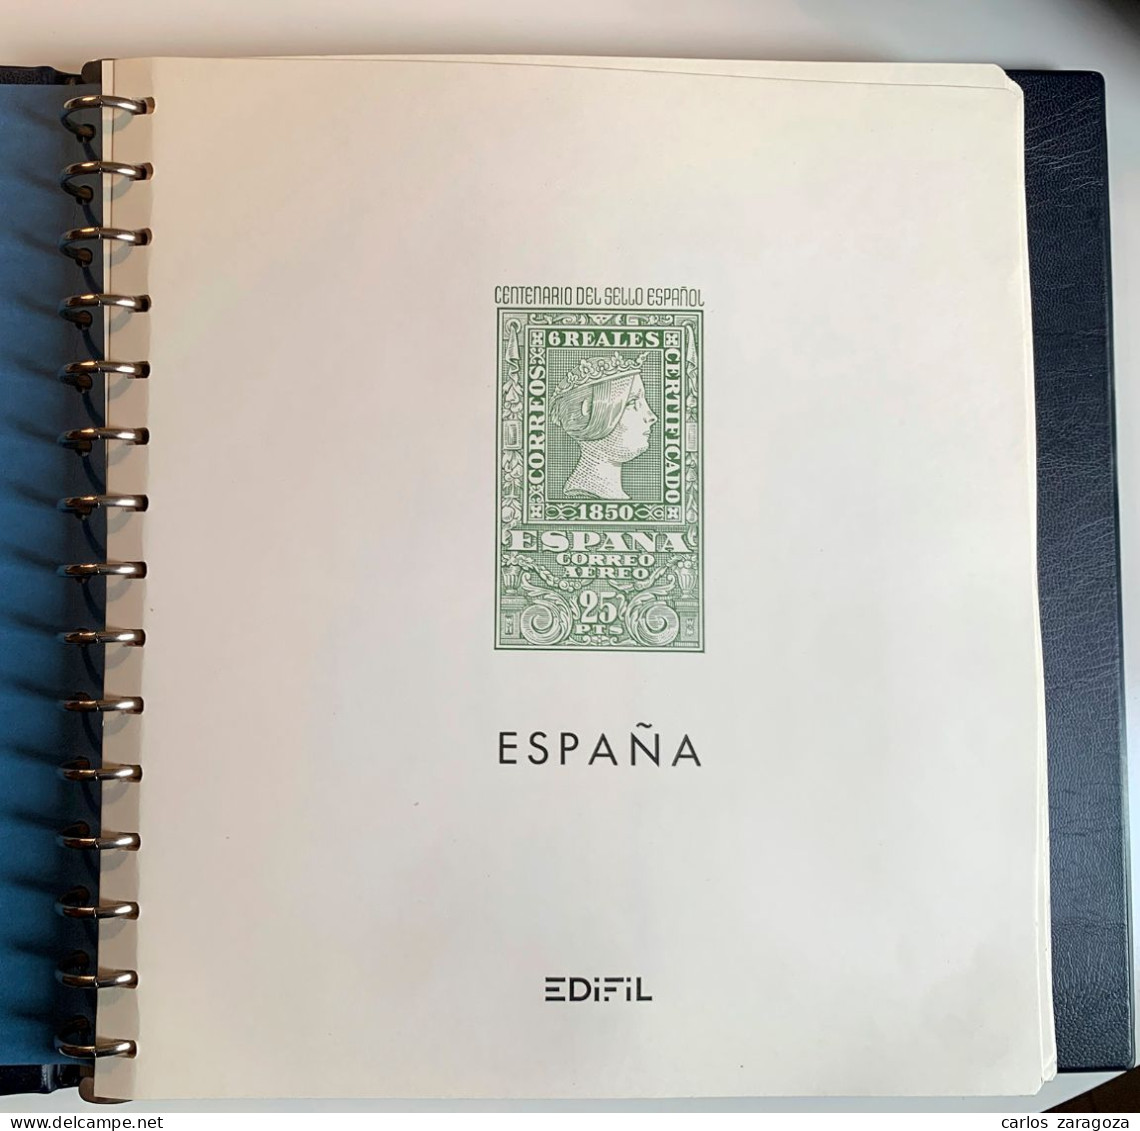 ESPAÑA—Años Completos 1970/1976 + Escudos + Trajes ** MNH Stamps. En ALBUM Filabo 15 Anillas Con Hojas EDIFIL - Colecciones